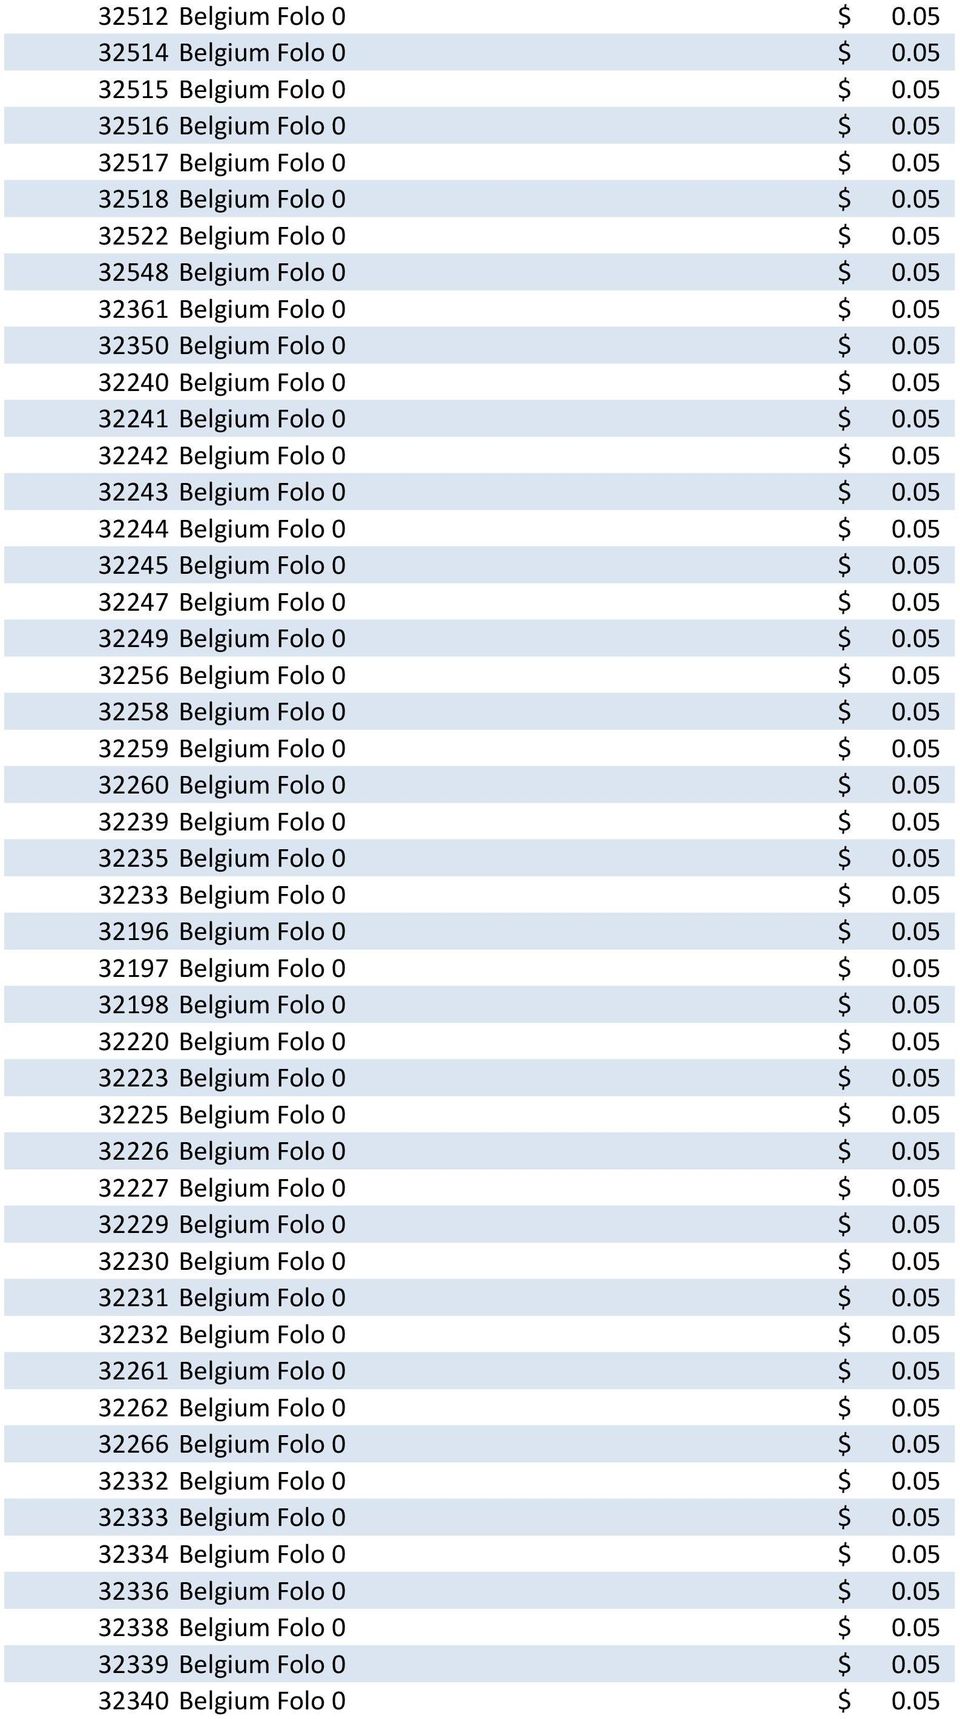 05 32244 Belgium Folo 0 $ 0.05 32245 Belgium Folo 0 $ 0.05 32247 Belgium Folo 0 $ 0.05 32249 Belgium Folo 0 $ 0.05 32256 Belgium Folo 0 $ 0.05 32258 Belgium Folo 0 $ 0.05 32259 Belgium Folo 0 $ 0.